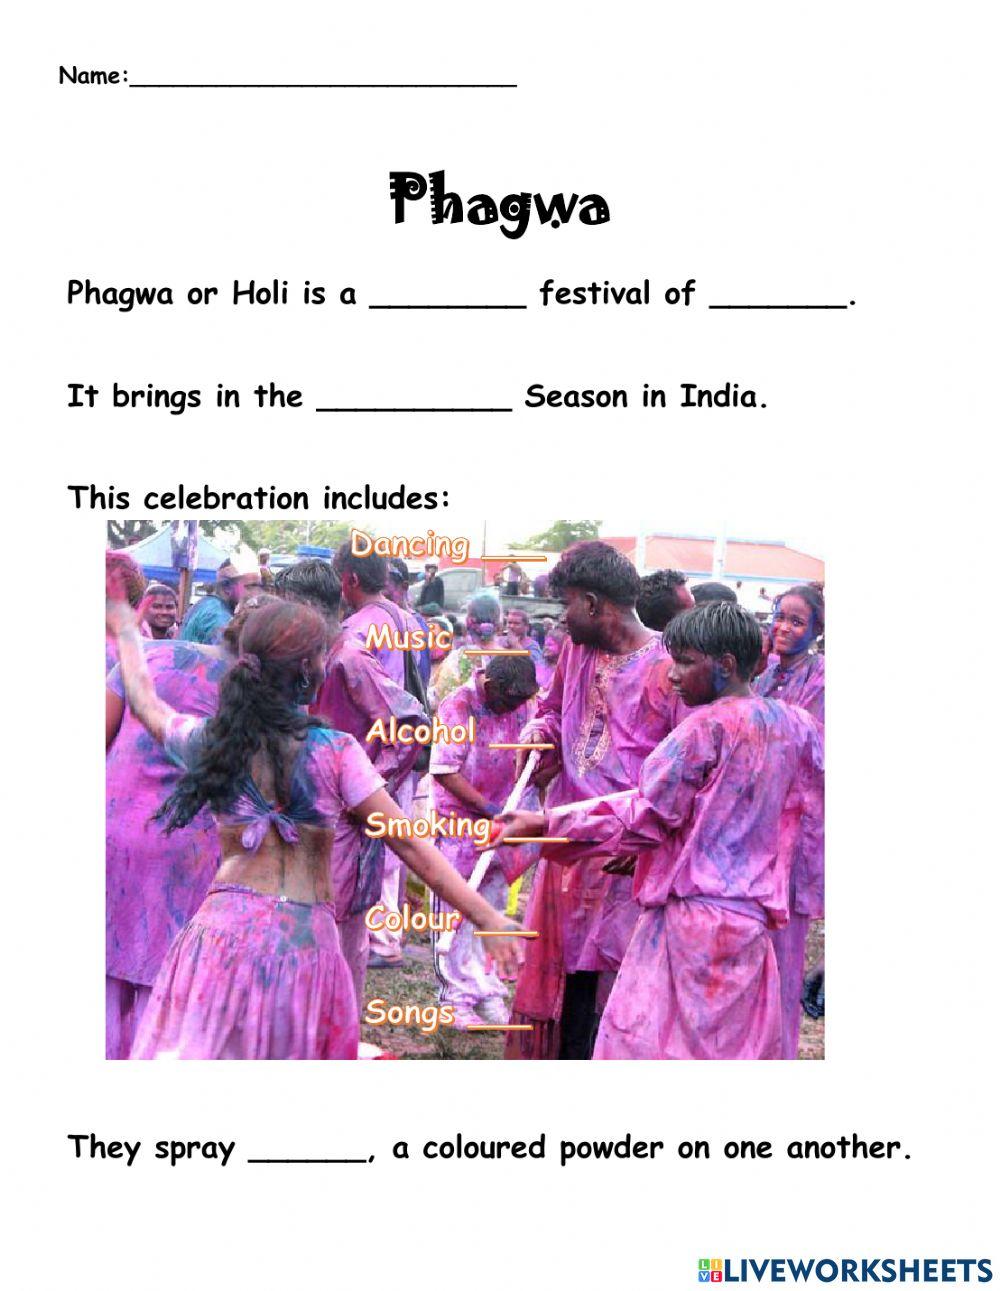 Phagwa or Holi Festival